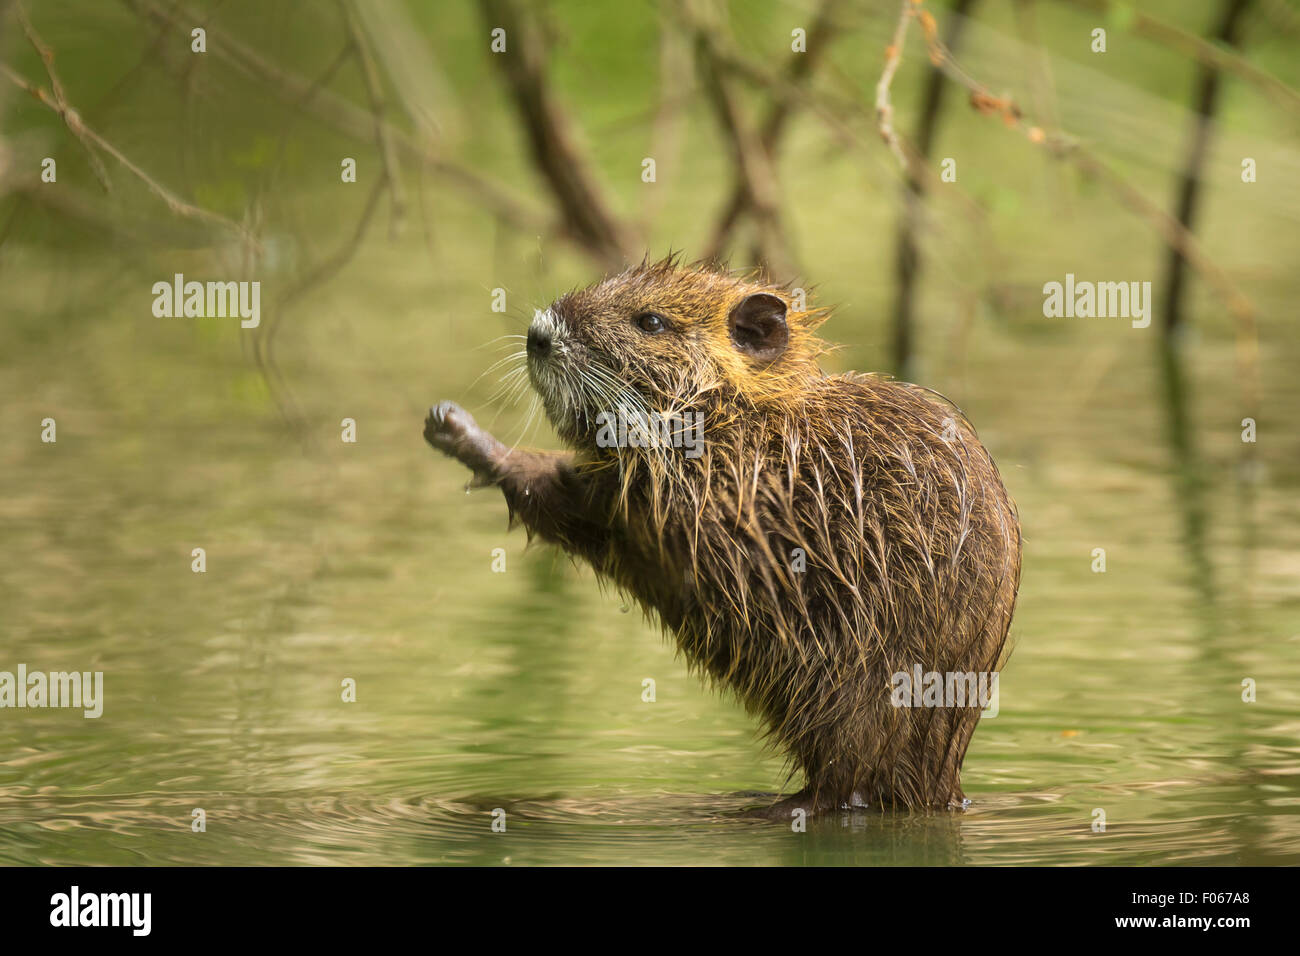 Muskrat in the water hiding between roots of a tree in wetlands Stock Photo